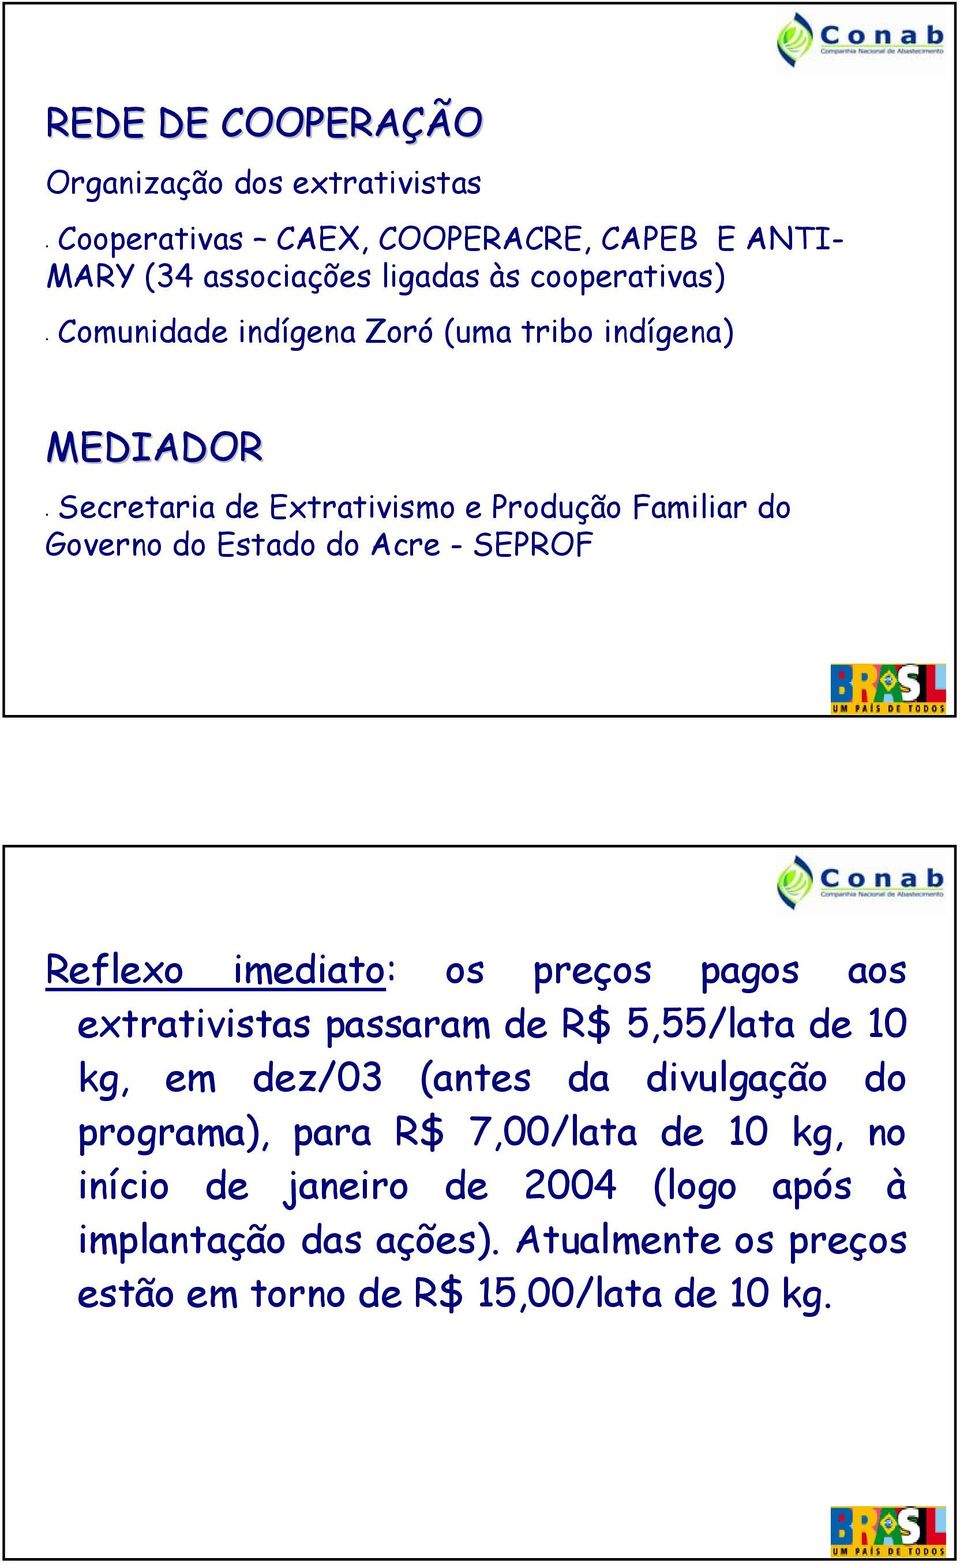 Reflexo imediato: os preços pagos aos extrativistas passaram de R$ 5,55/lata de 10 kg, em dez/03 (antes da divulgação do programa), para R$